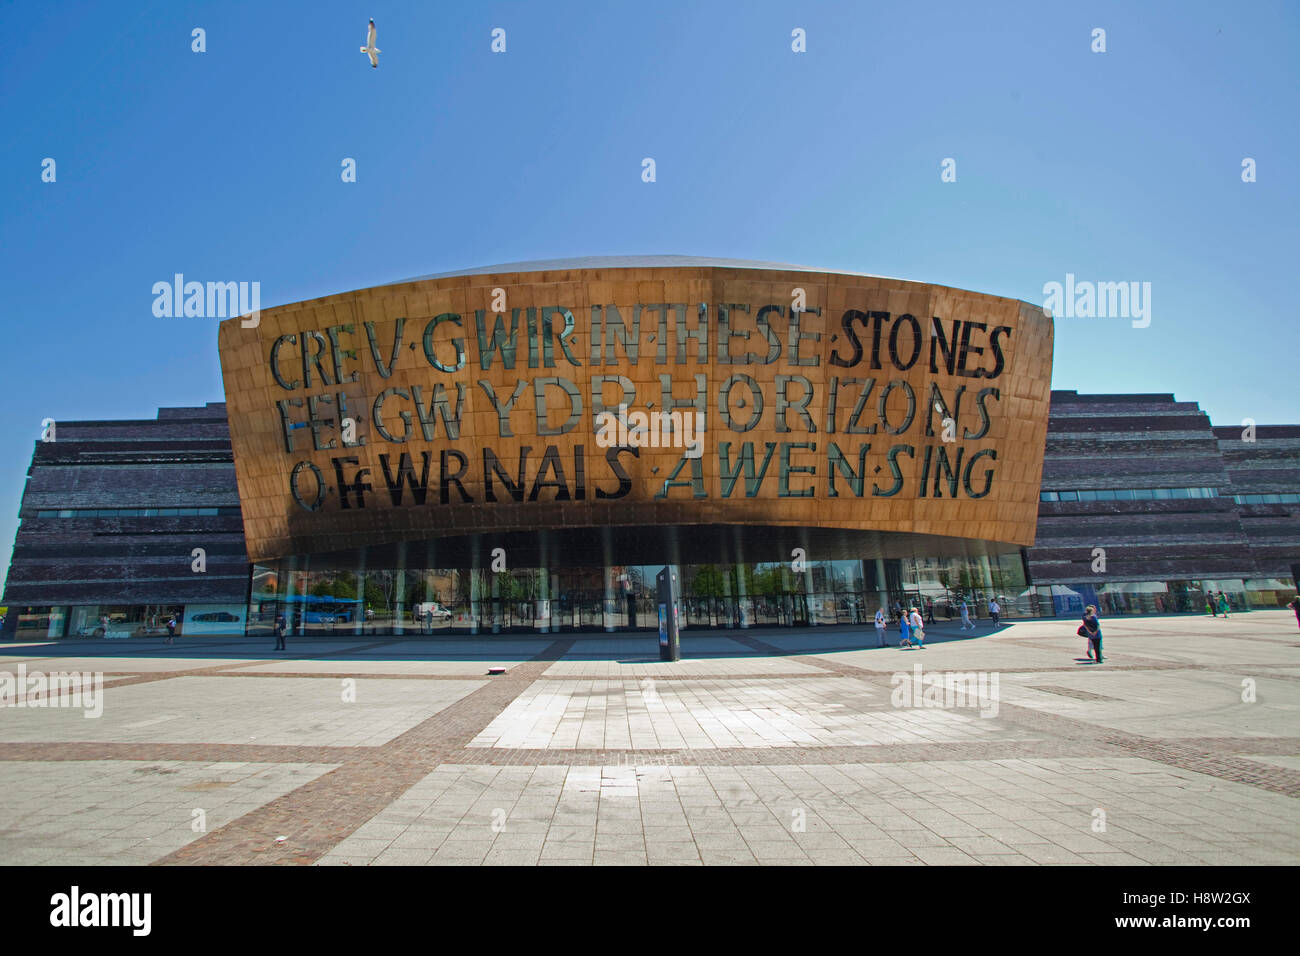 Canolfan Mileniwm Cymru, Wales Millennium Centre, Bucht von Cardiff, Wales, Vereinigtes Königreich, Europa Stockfoto